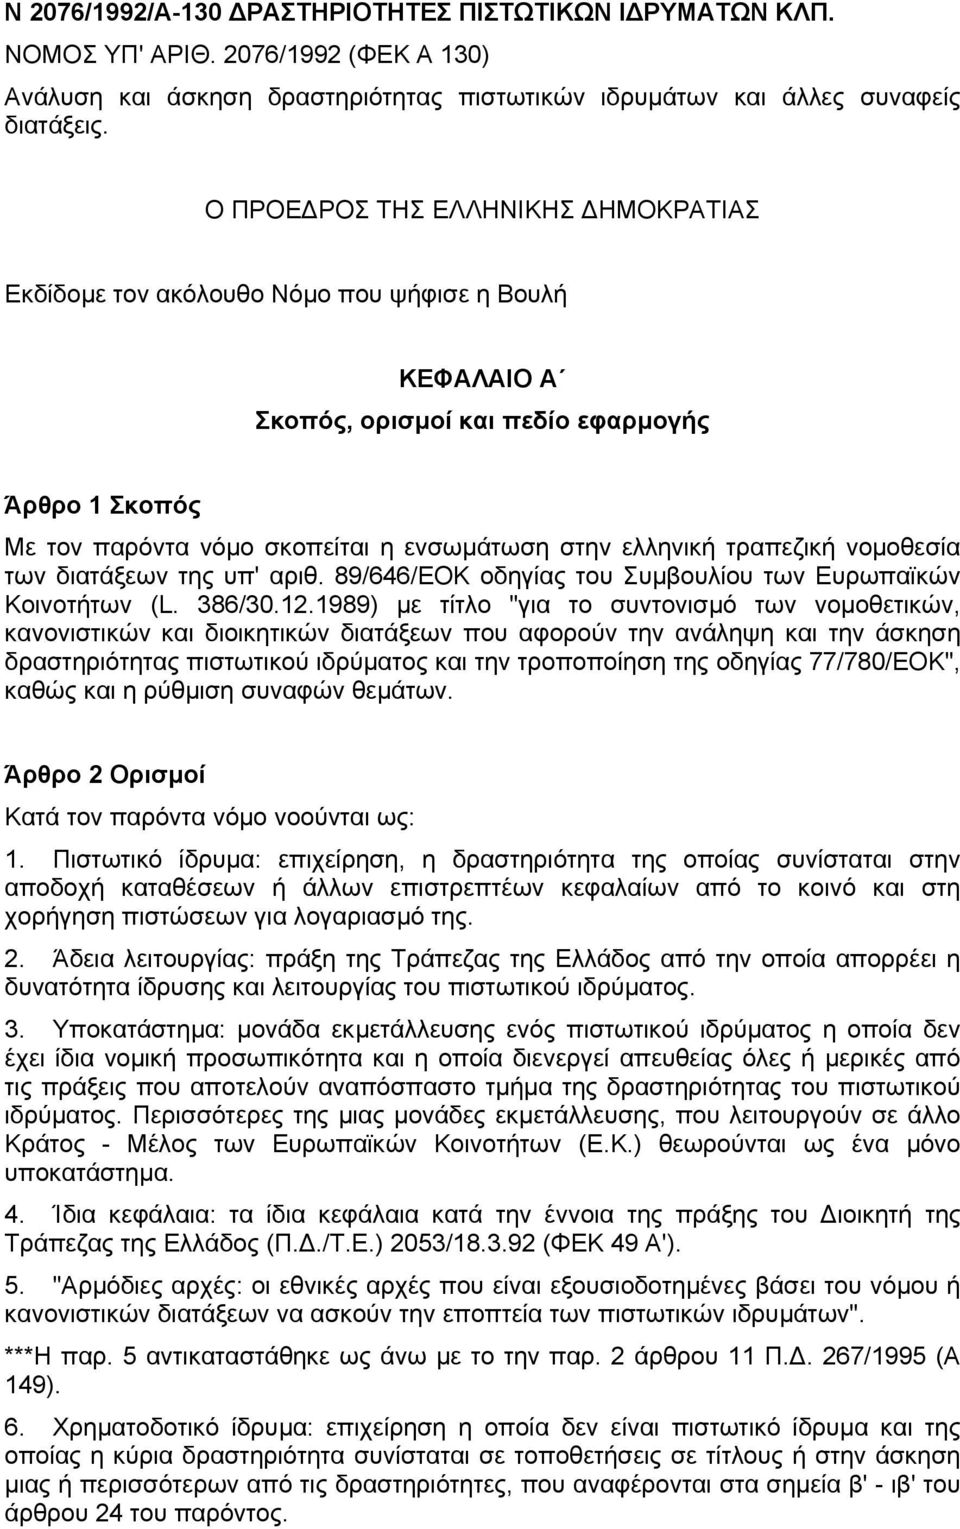 ελληνική τραπεζική νοµοθεσία των διατάξεων της υπ' αριθ. 89/646/ΕΟΚ οδηγίας του Συµβουλίου των Ευρωπαϊκών Κοινοτήτων (L. 386/30.12.